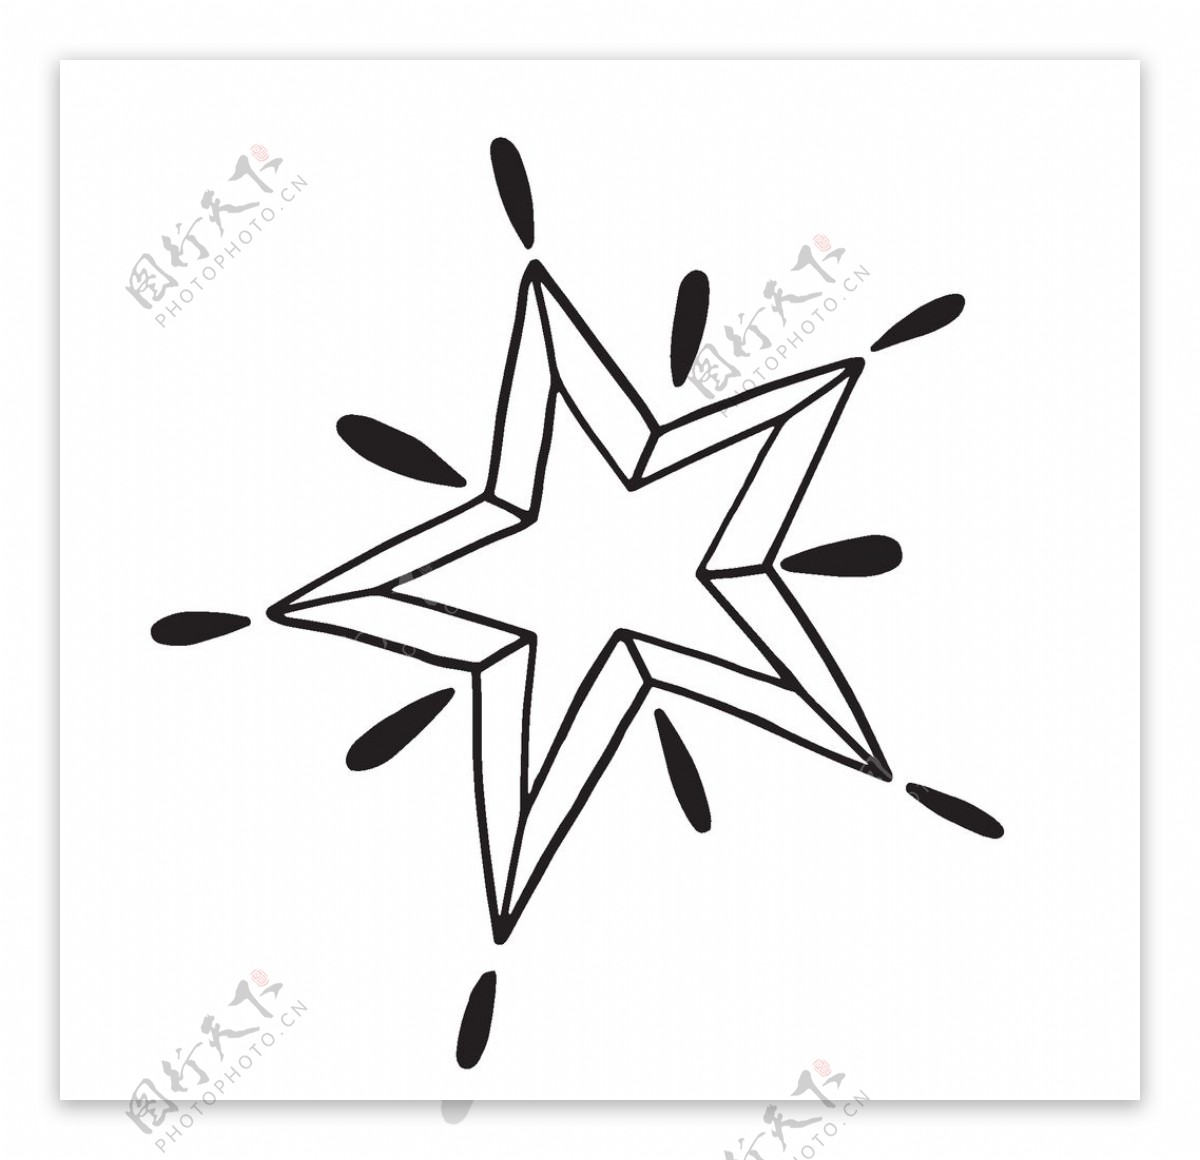 黑色创意五角星图案